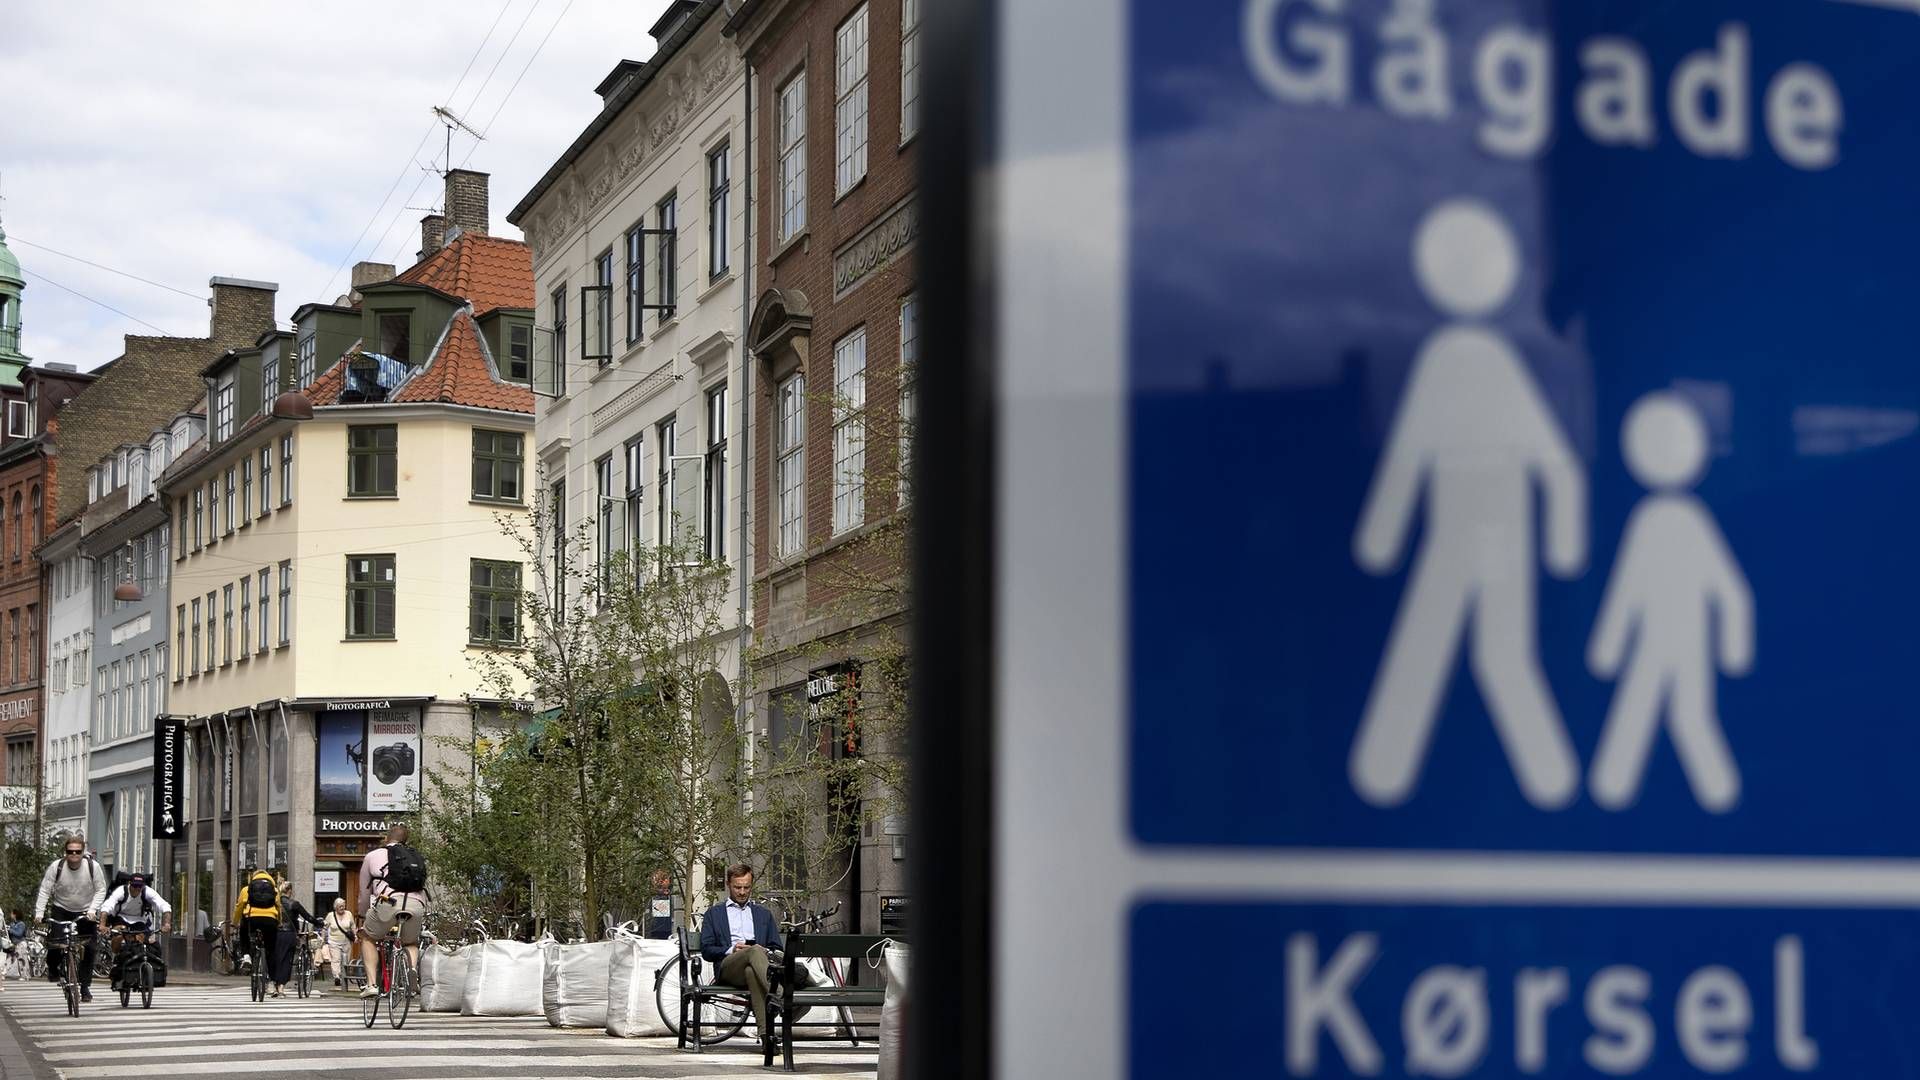 Mange kommuner oplever udfordringer med tomme butikker i bymidterne. | Foto: Finn Frandsen/Ritzau Scanpix